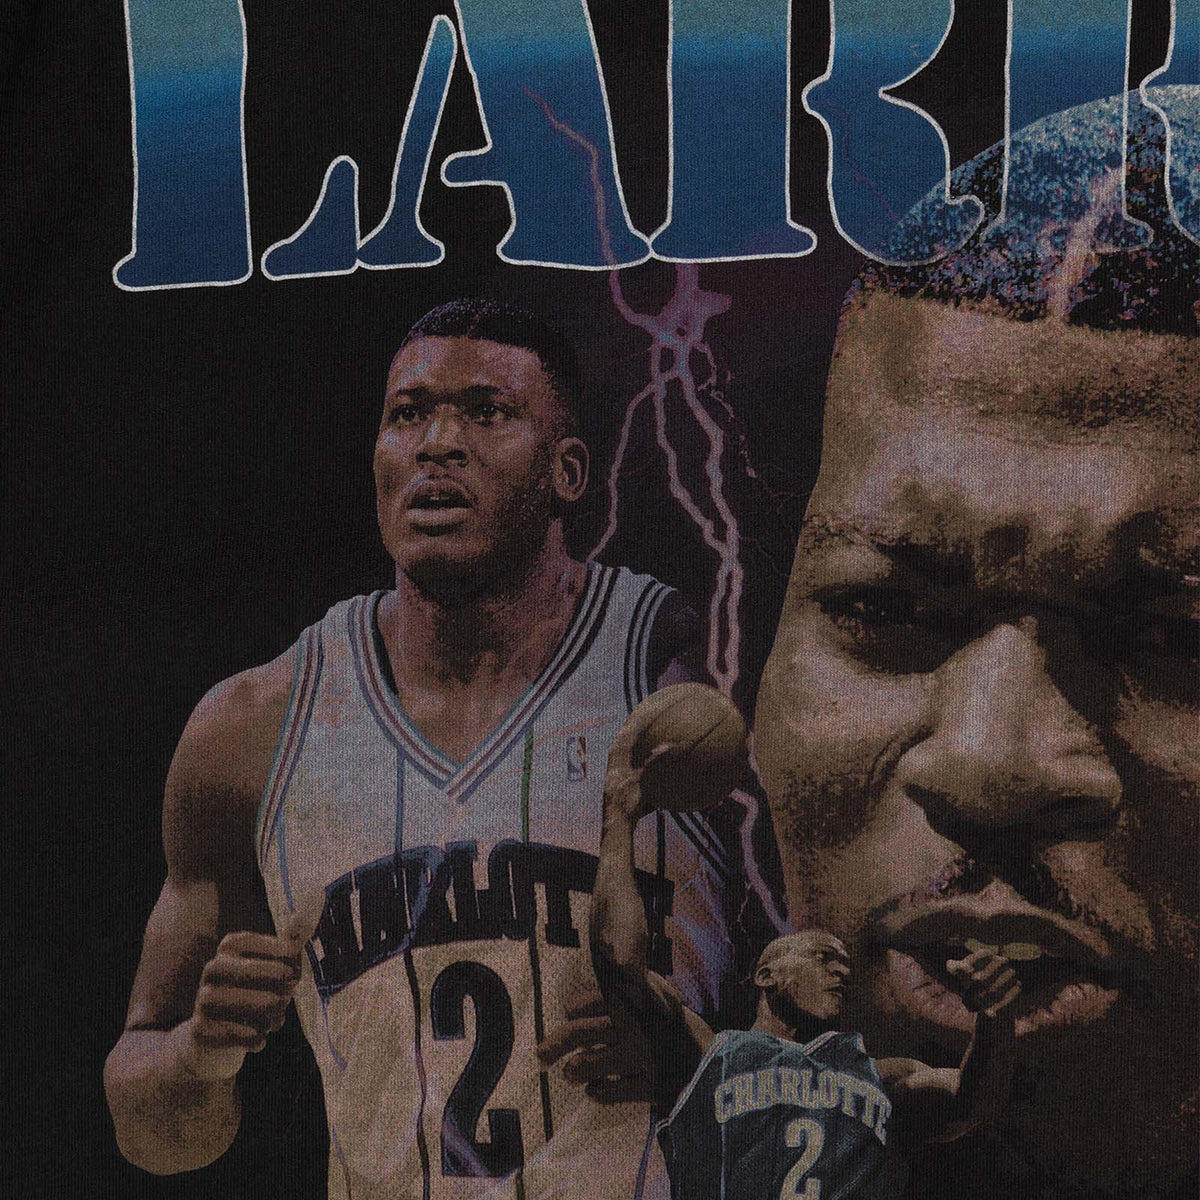 Larry Johnson Charlotte Hornets Player &amp; Stats T-Shirt - Black